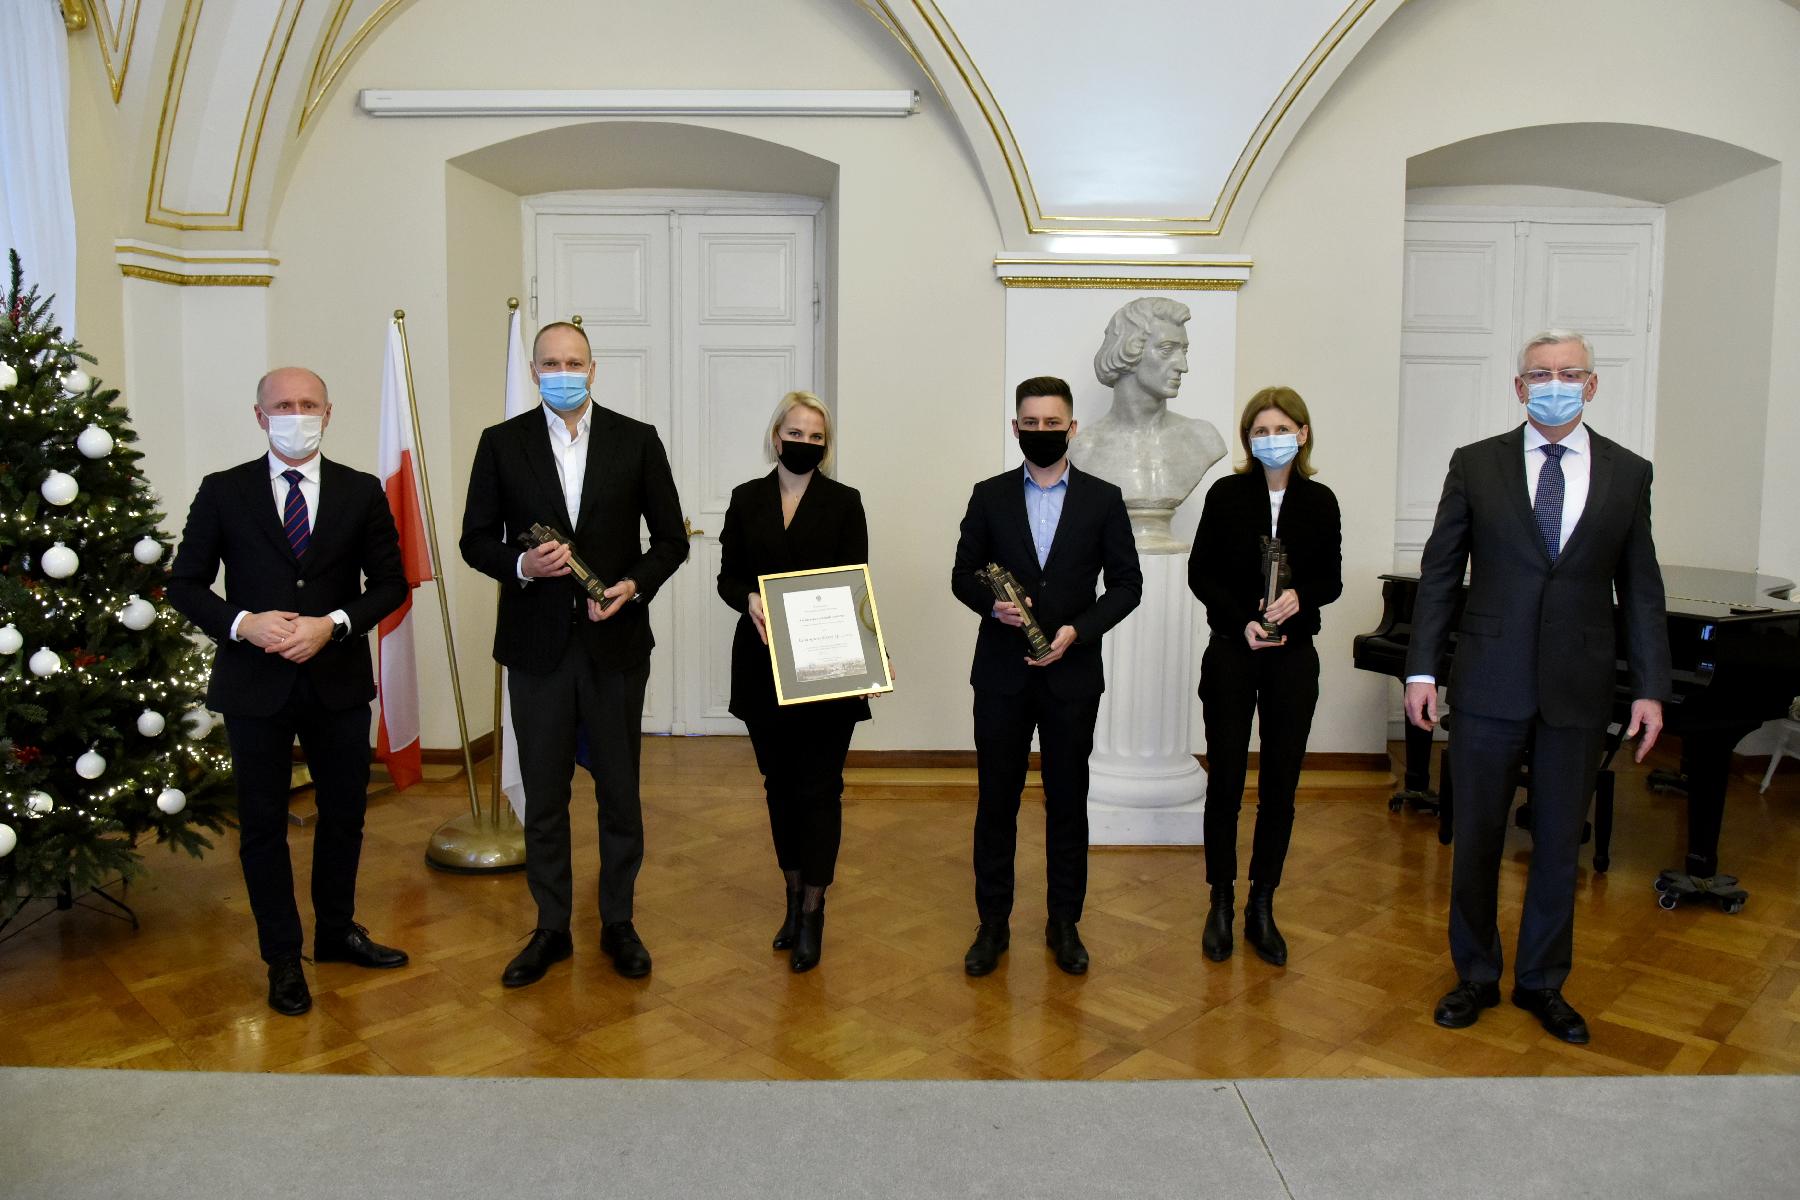 Laureaci trzeciej odsłony konkursu Architectus civitatis nostrae. W dloniach trzymają dyplomy i statuetki. - grafika artykułu